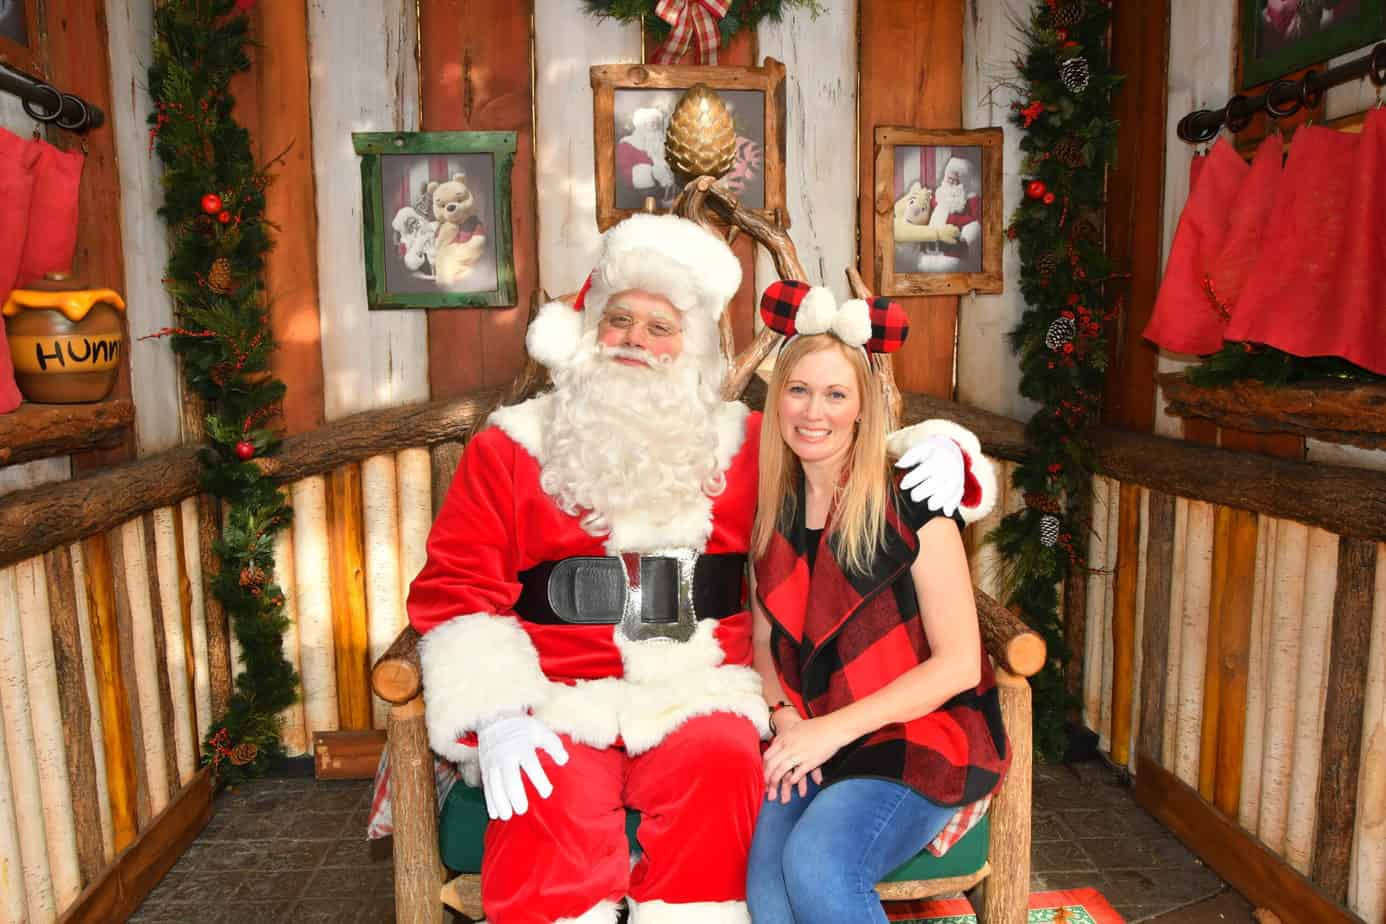 Meet Santa Claus at Disneyland Resort